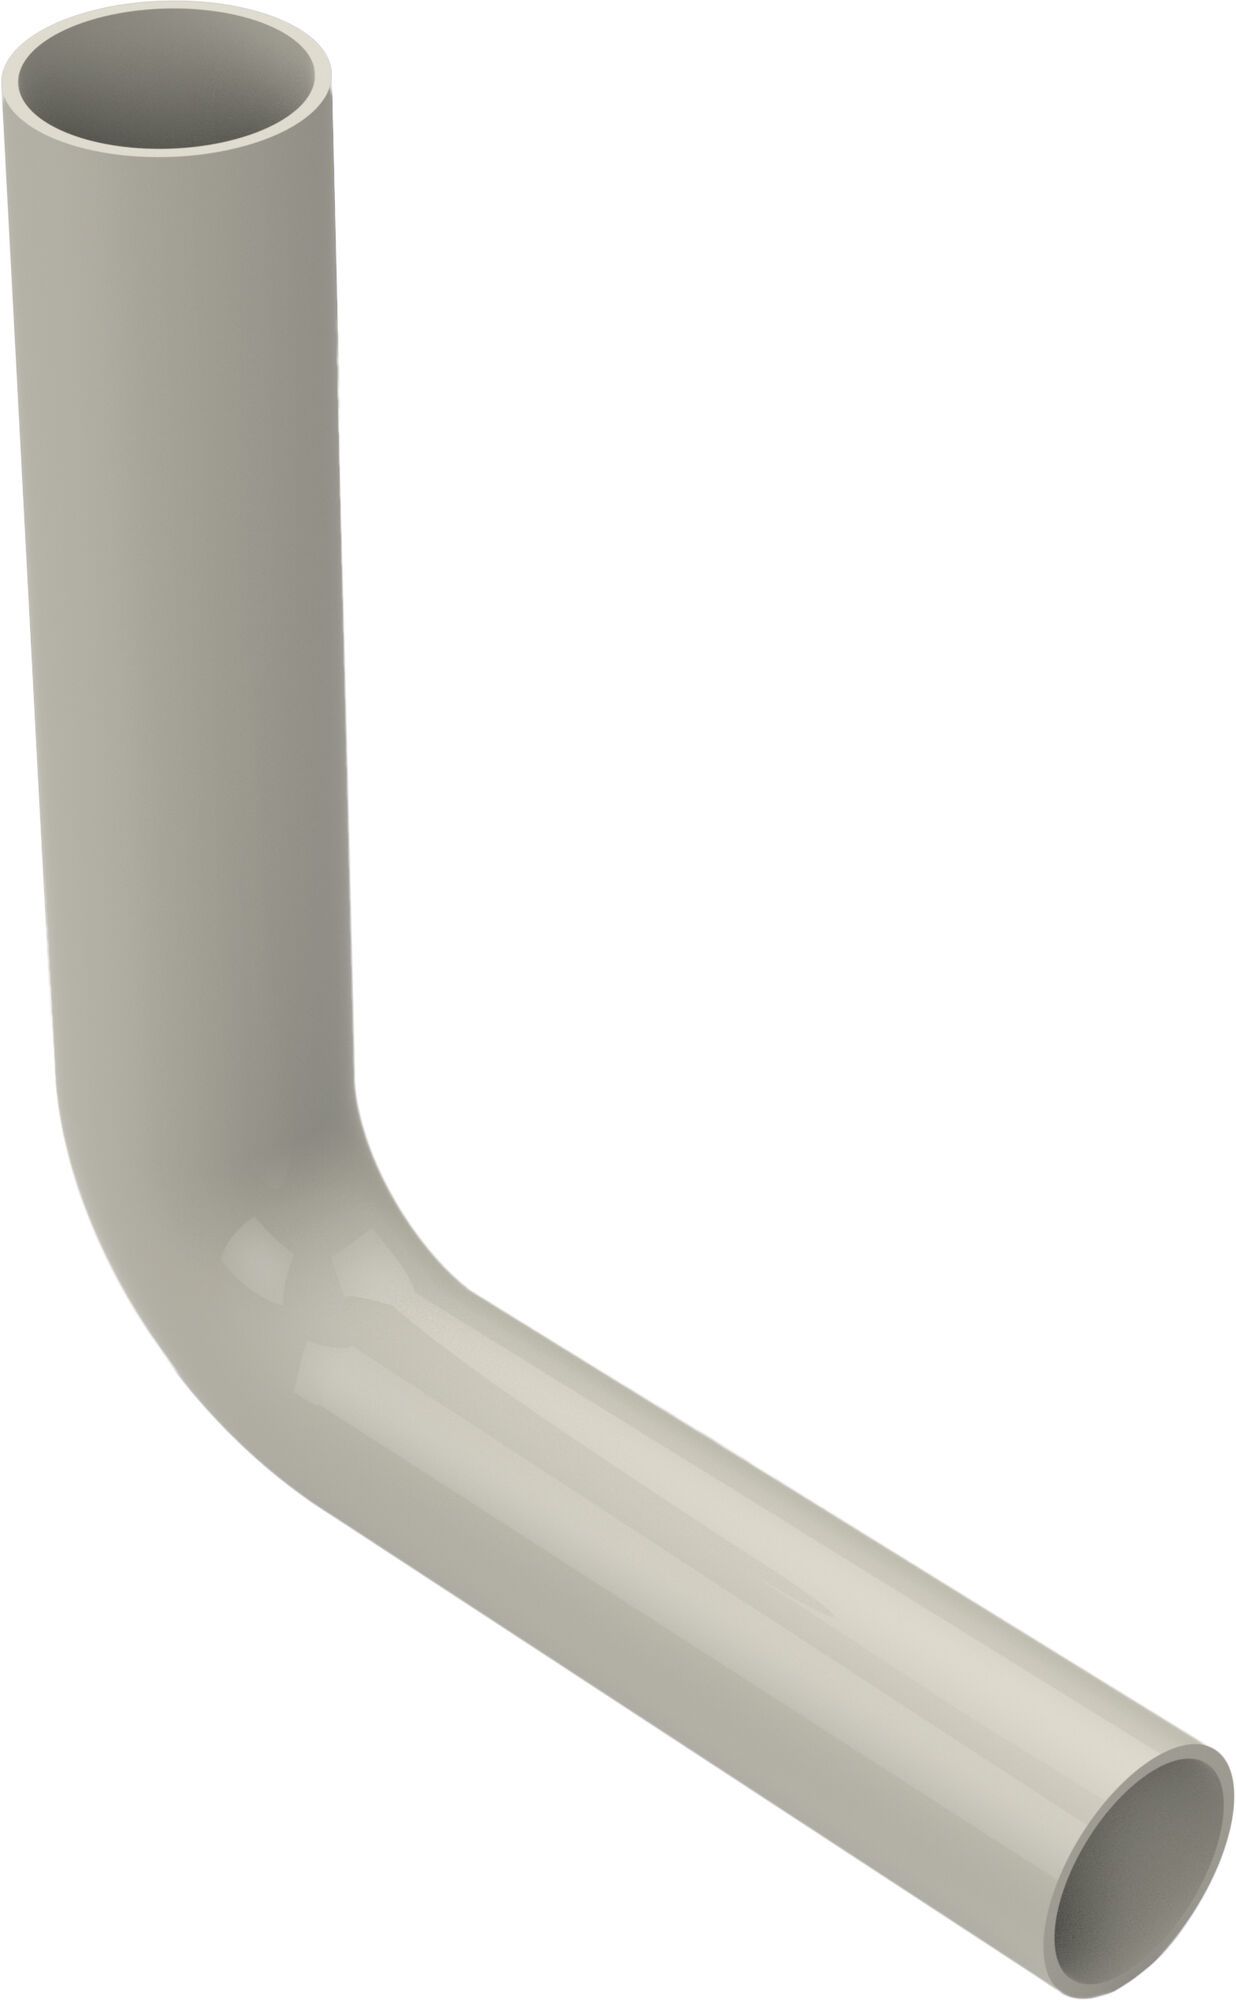 Flush pipe elbow, 230 x 210 mm, pergamon